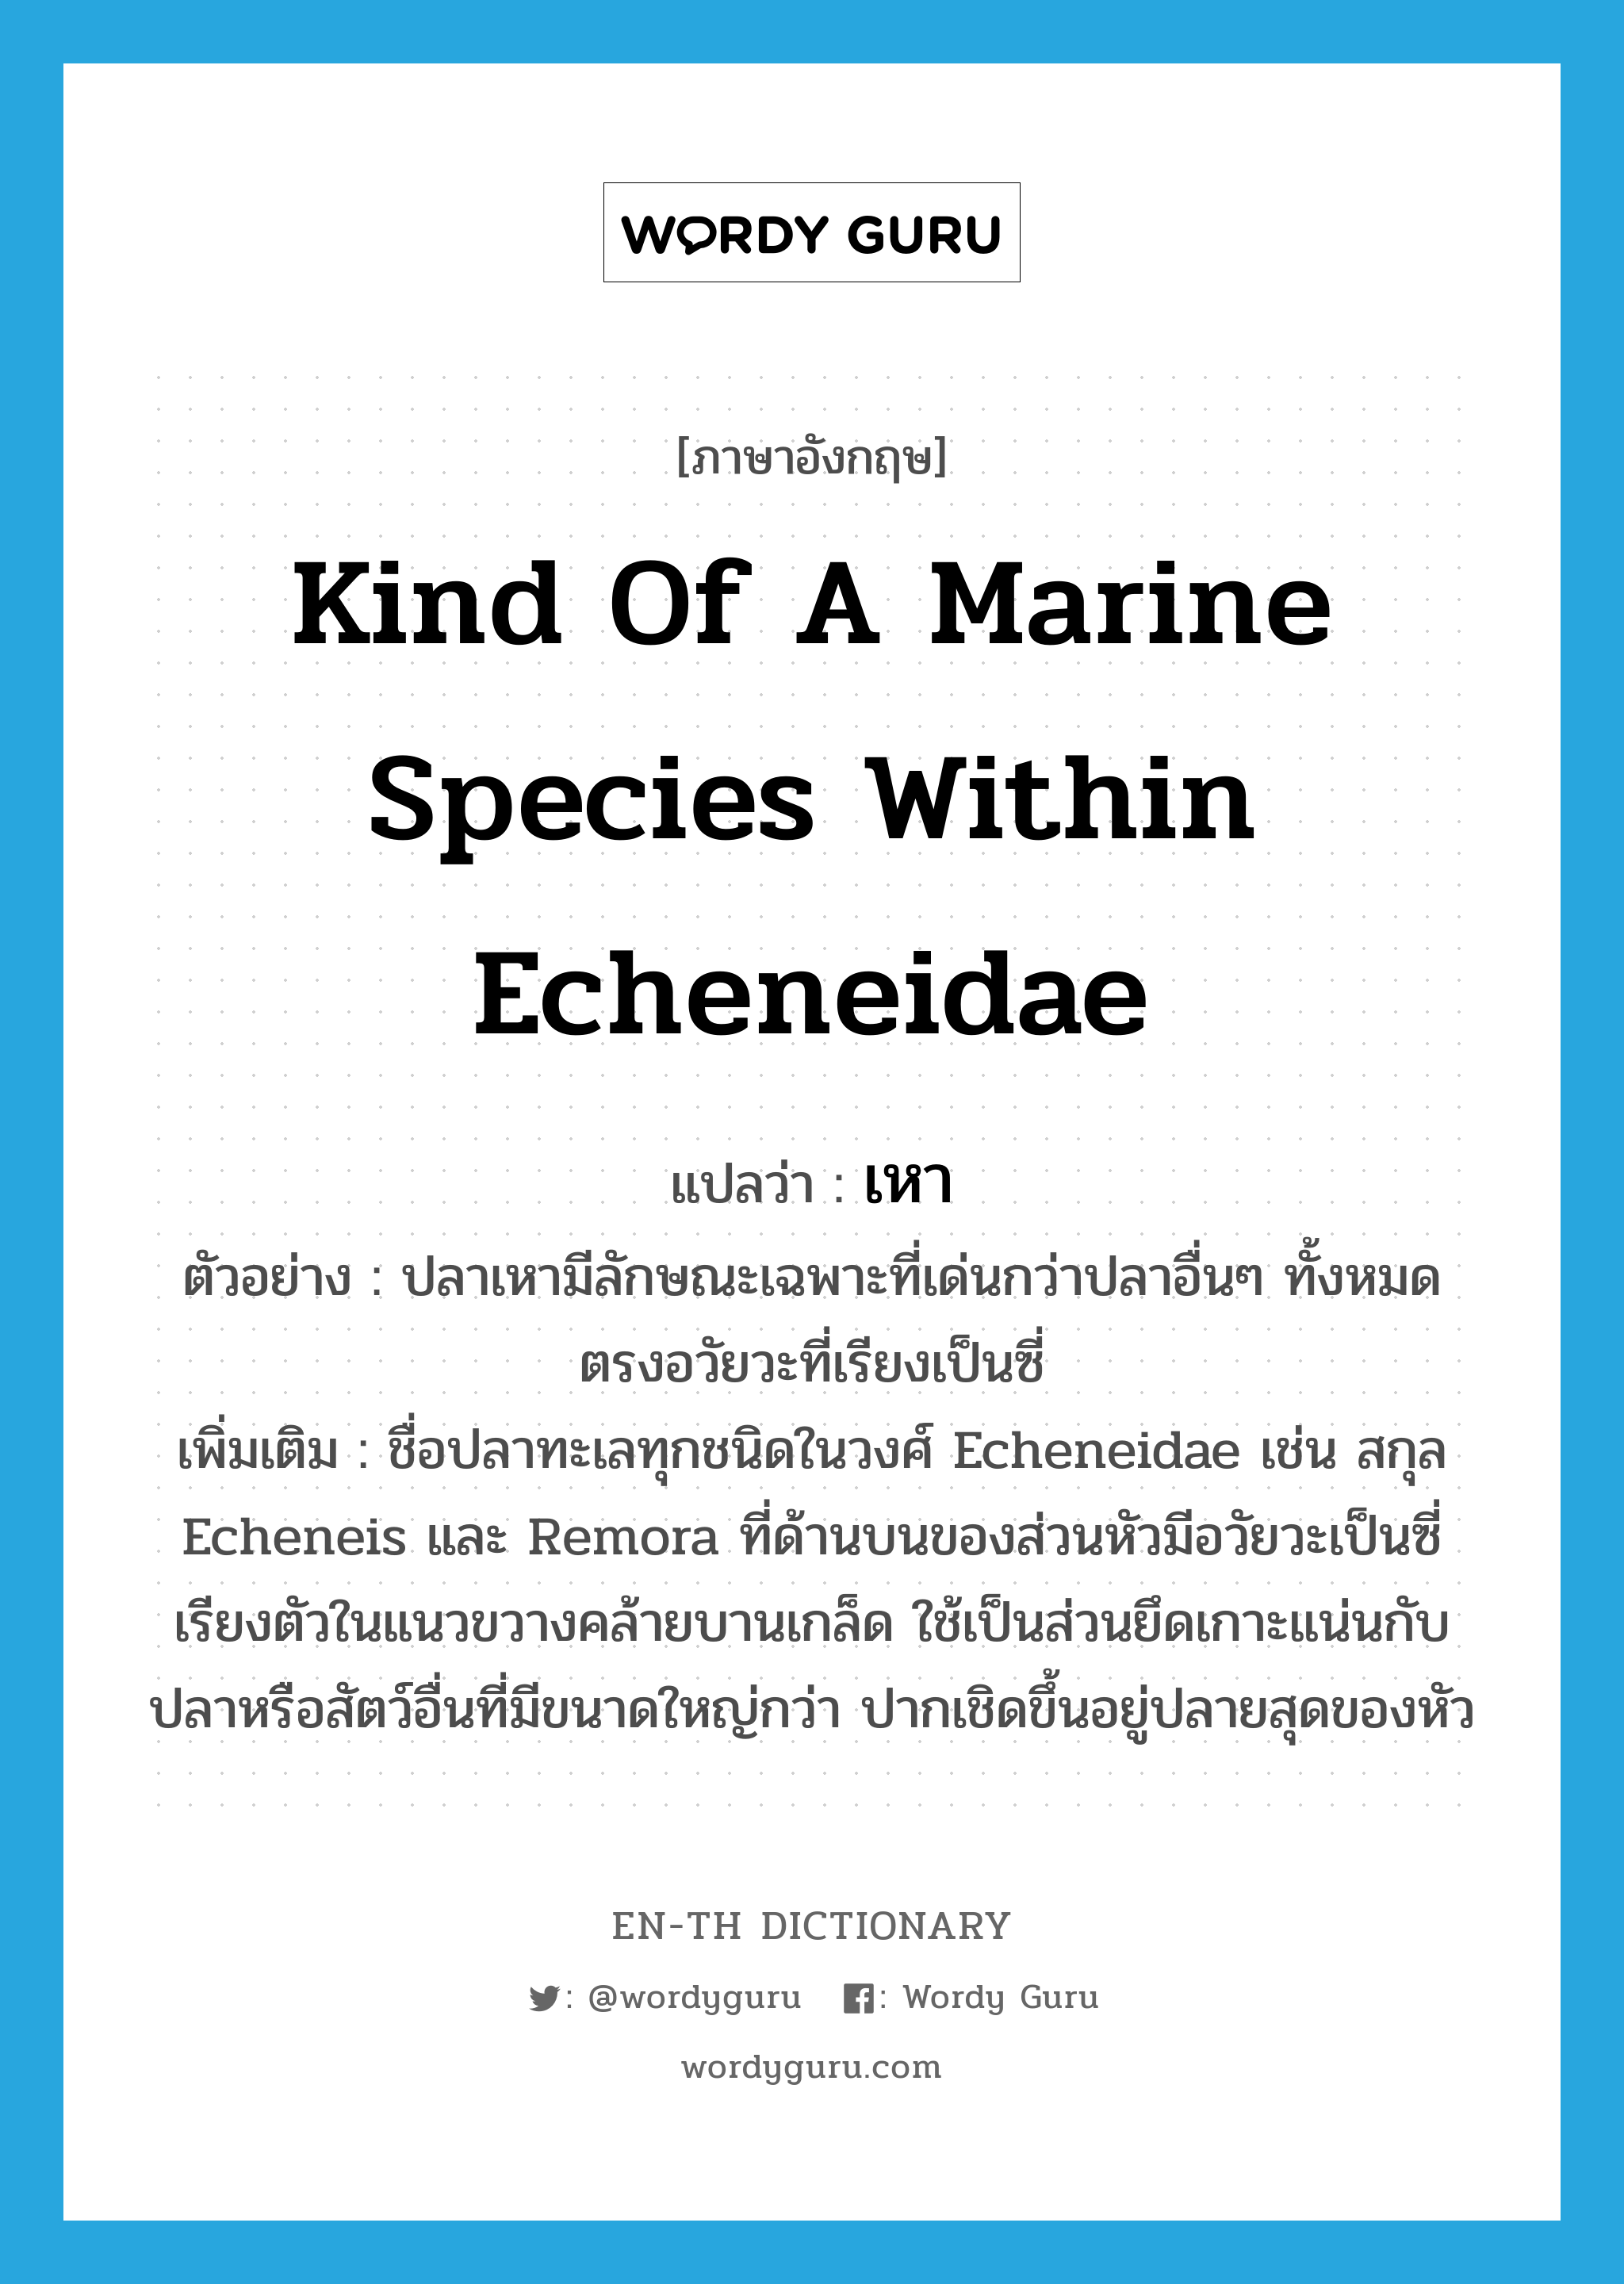 เหา ภาษาอังกฤษ?, คำศัพท์ภาษาอังกฤษ เหา แปลว่า kind of a marine species within Echeneidae ประเภท N ตัวอย่าง ปลาเหามีลักษณะเฉพาะที่เด่นกว่าปลาอื่นๆ ทั้งหมดตรงอวัยวะที่เรียงเป็นซี่ เพิ่มเติม ชื่อปลาทะเลทุกชนิดในวงศ์ Echeneidae เช่น สกุล Echeneis และ Remora ที่ด้านบนของส่วนหัวมีอวัยวะเป็นซี่เรียงตัวในแนวขวางคล้ายบานเกล็ด ใช้เป็นส่วนยึดเกาะแน่นกับปลาหรือสัตว์อื่นที่มีขนาดใหญ่กว่า ปากเชิดขึ้นอยู่ปลายสุดของหัว หมวด N